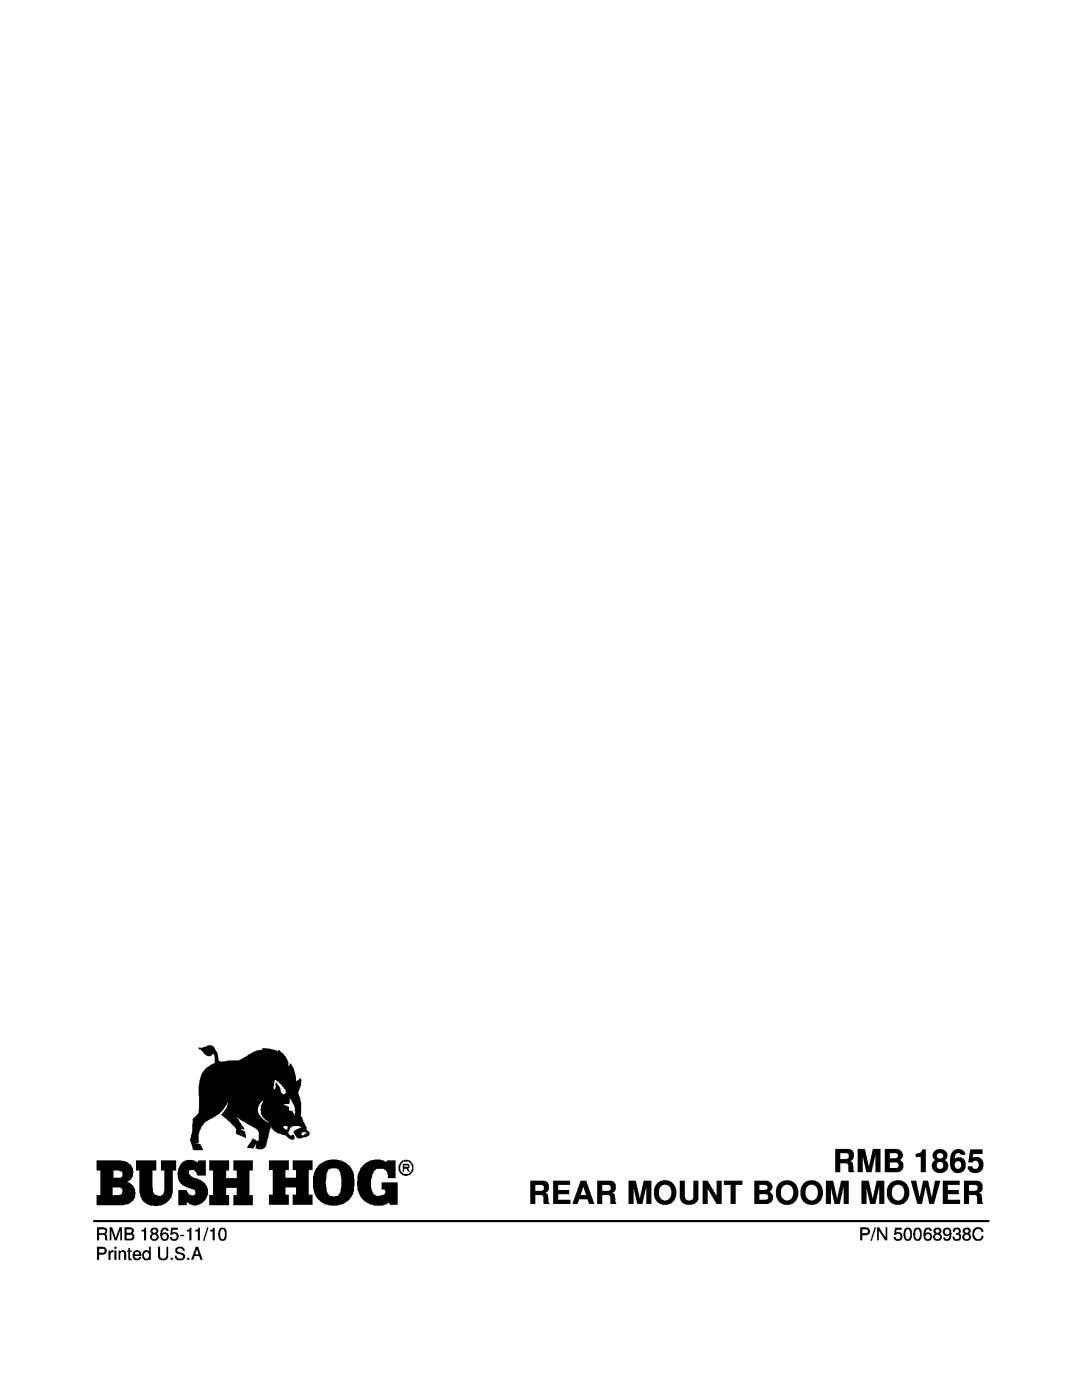 Bush Hog manual RMB 1865 REAR MOUNT BOOM MOWER, RMB 1865-11/10, P/N 50068938C, Printed U.S.A 